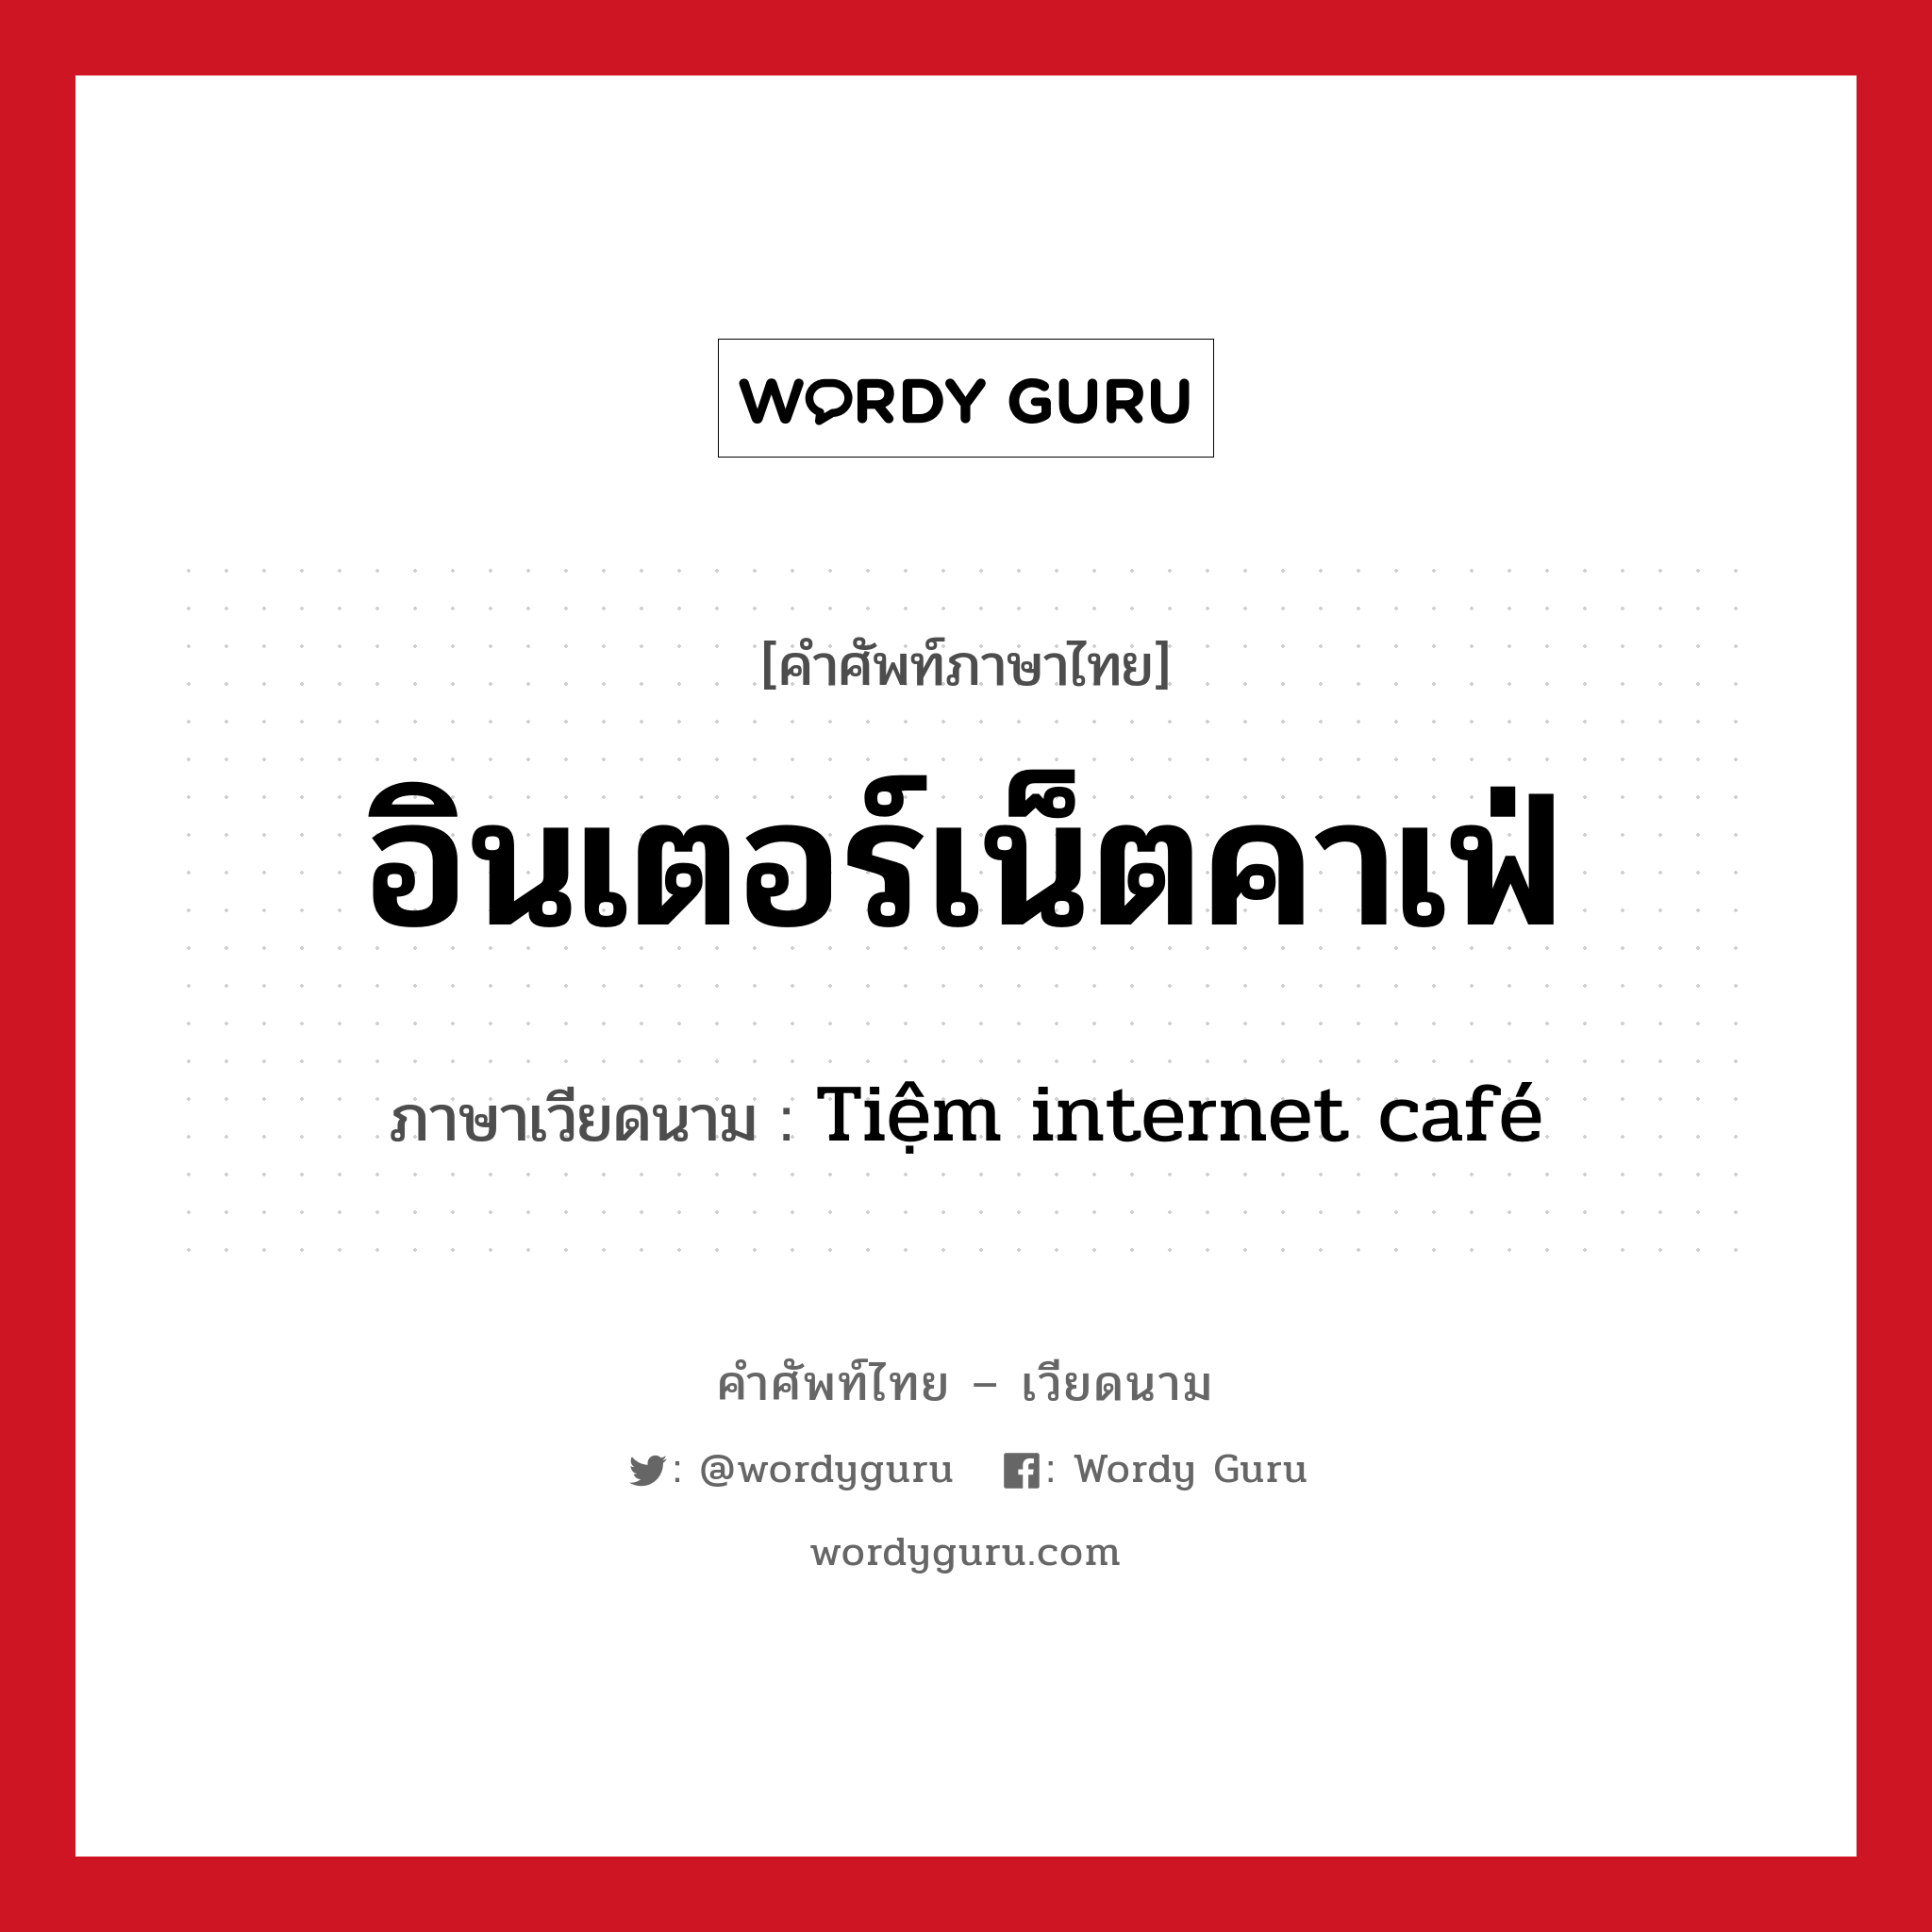 อินเตอร์เน็ตคาเฟ่ ภาษาเวียดนามคืออะไร, คำศัพท์ภาษาไทย - เวียดนาม อินเตอร์เน็ตคาเฟ่ ภาษาเวียดนาม Tiệm internet café หมวด สิ่งอำนวยความสะดวก หมวด สิ่งอำนวยความสะดวก